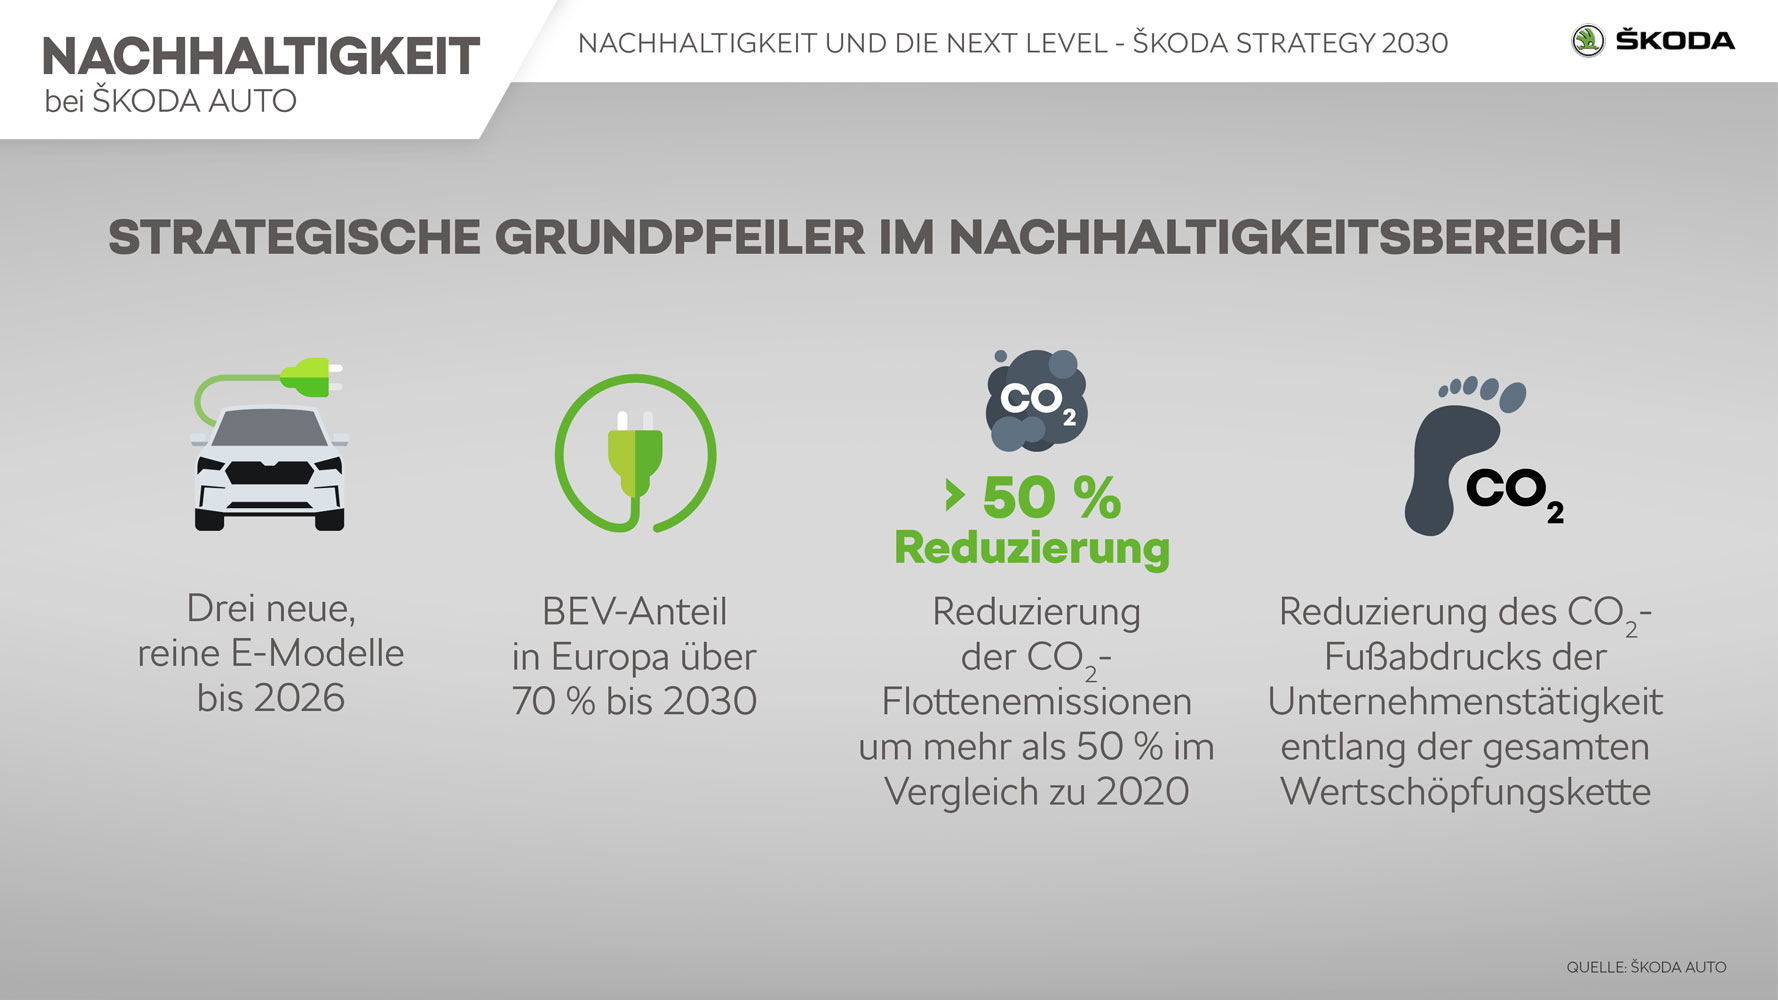 Skoda_Nachhaltigkeit_Infografik